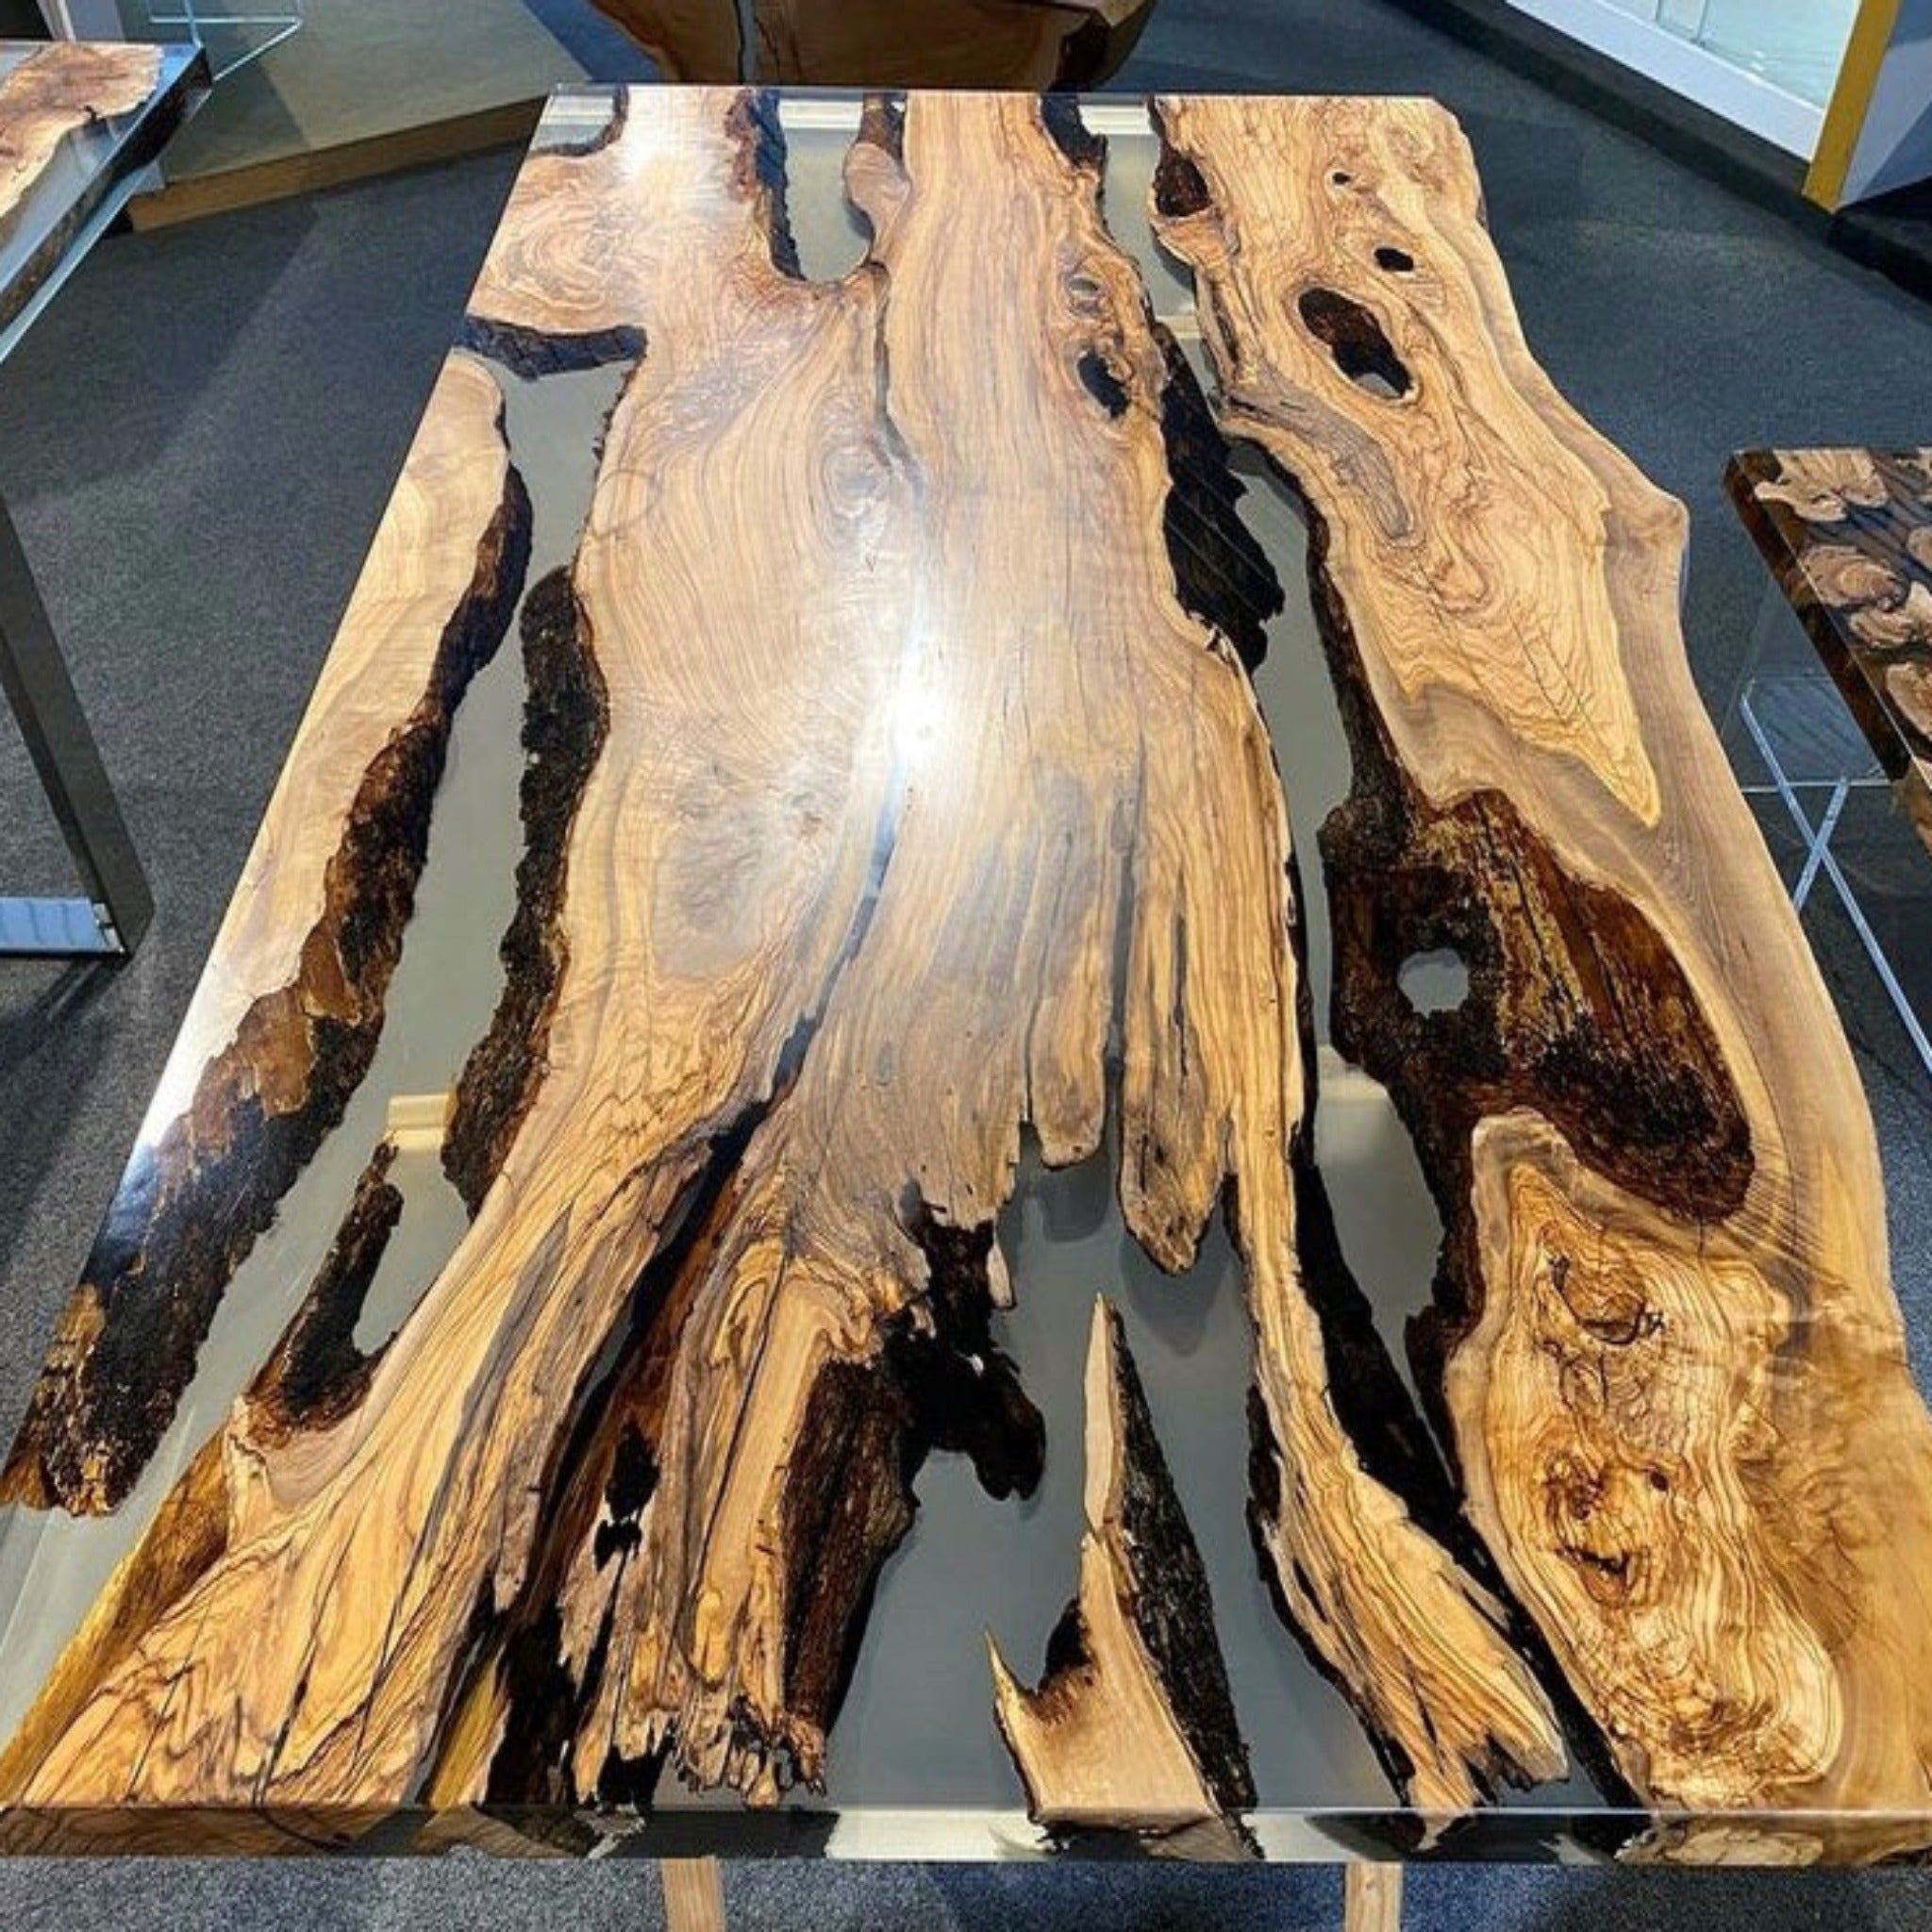 Custom Black Epoxy Wood Dining Table CT14